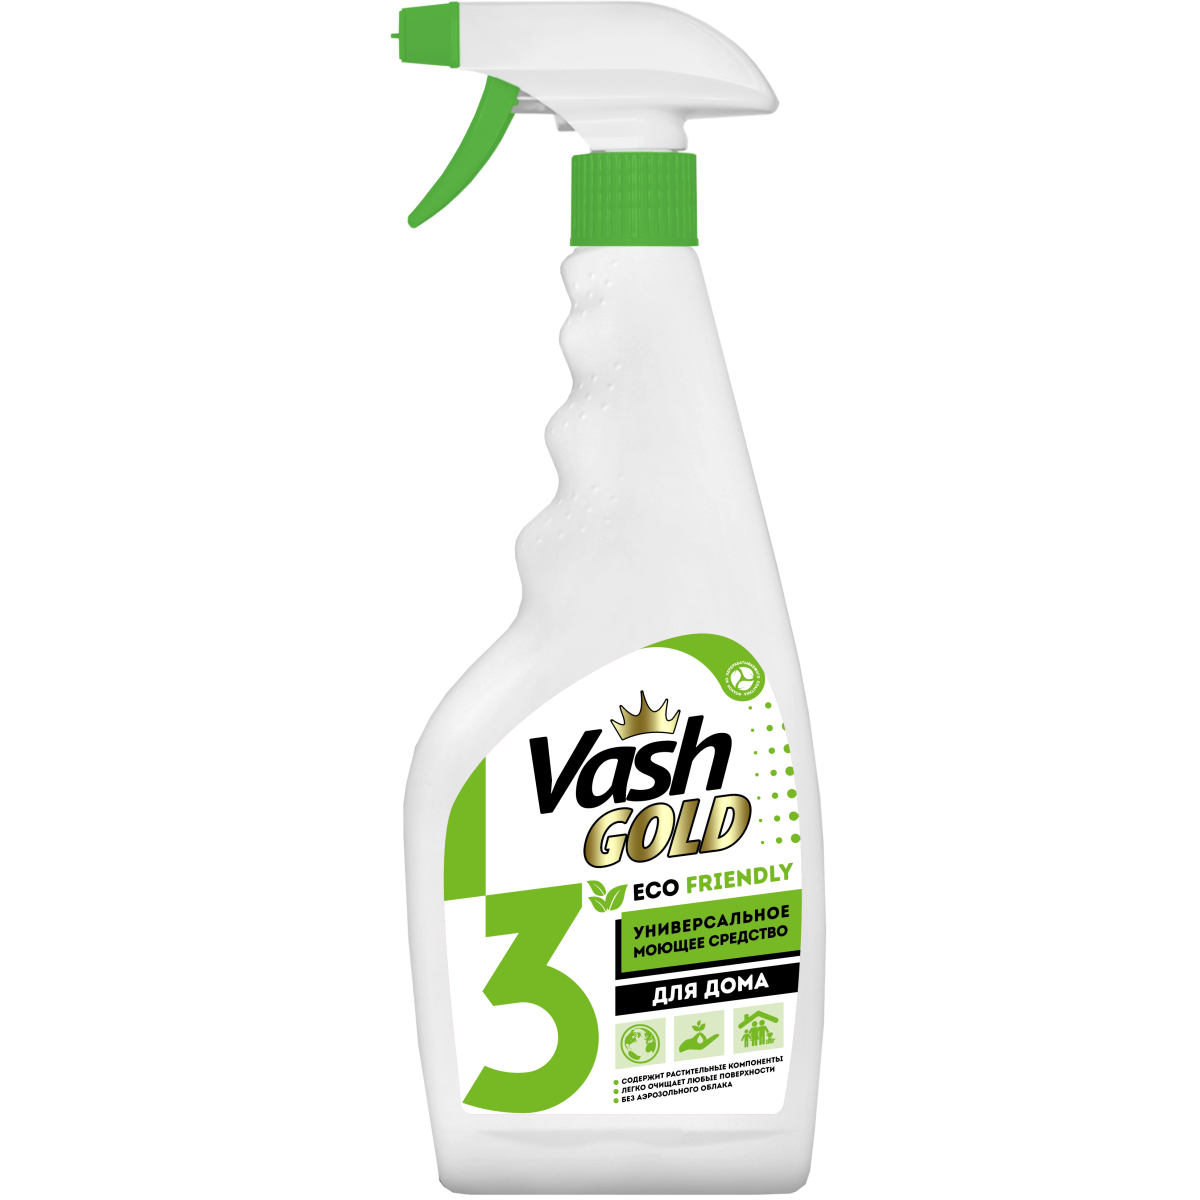 Средство чистящее Vash Gold Eco Friendly универсальное для дома, спрей, 500 мл чистящее средство для кухни спрей антижир 500 мл